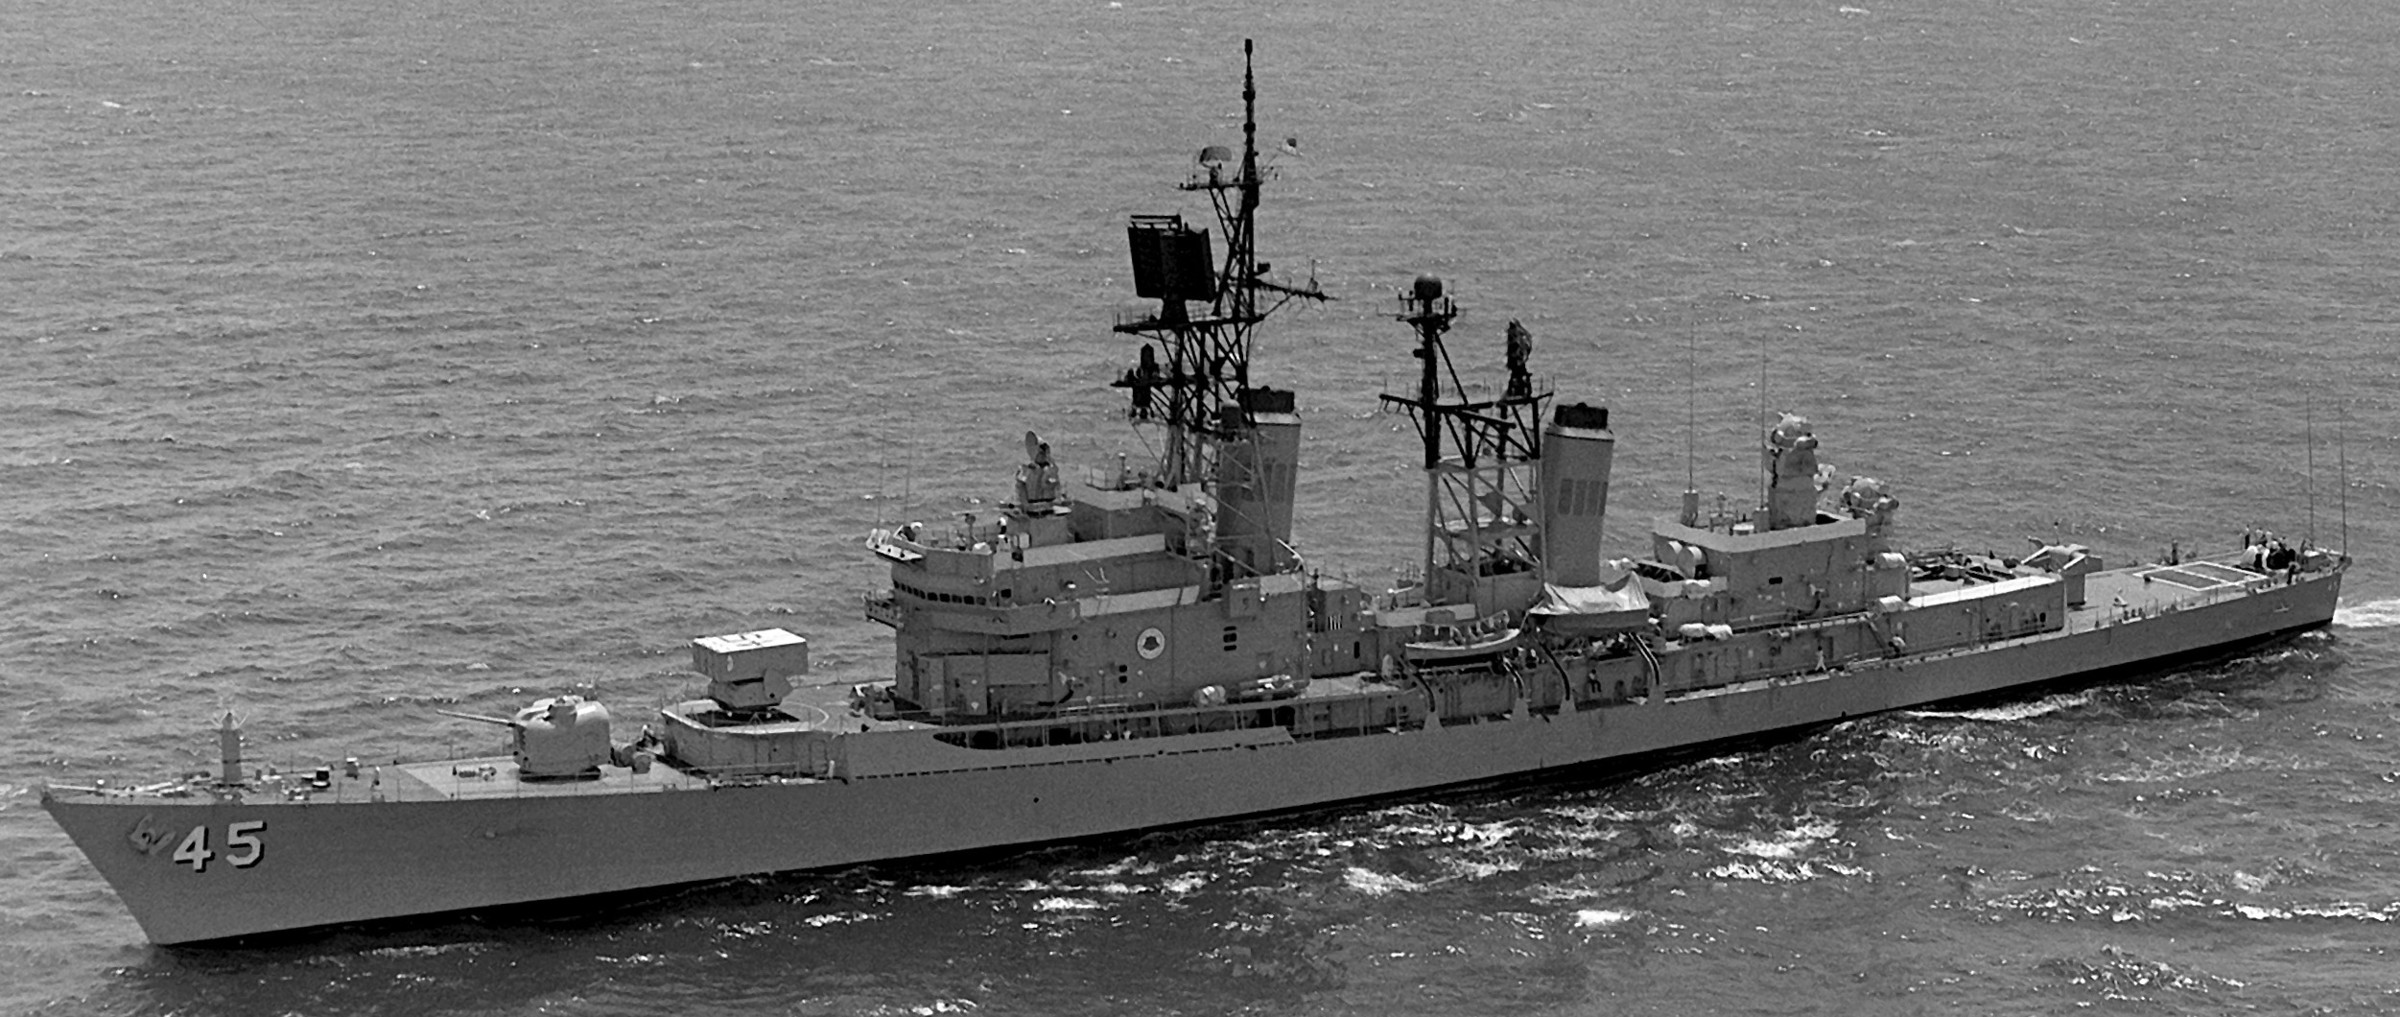 ddg-45 uss dewey farragut class destroyer us navy 1979 04 exercise unitas xx